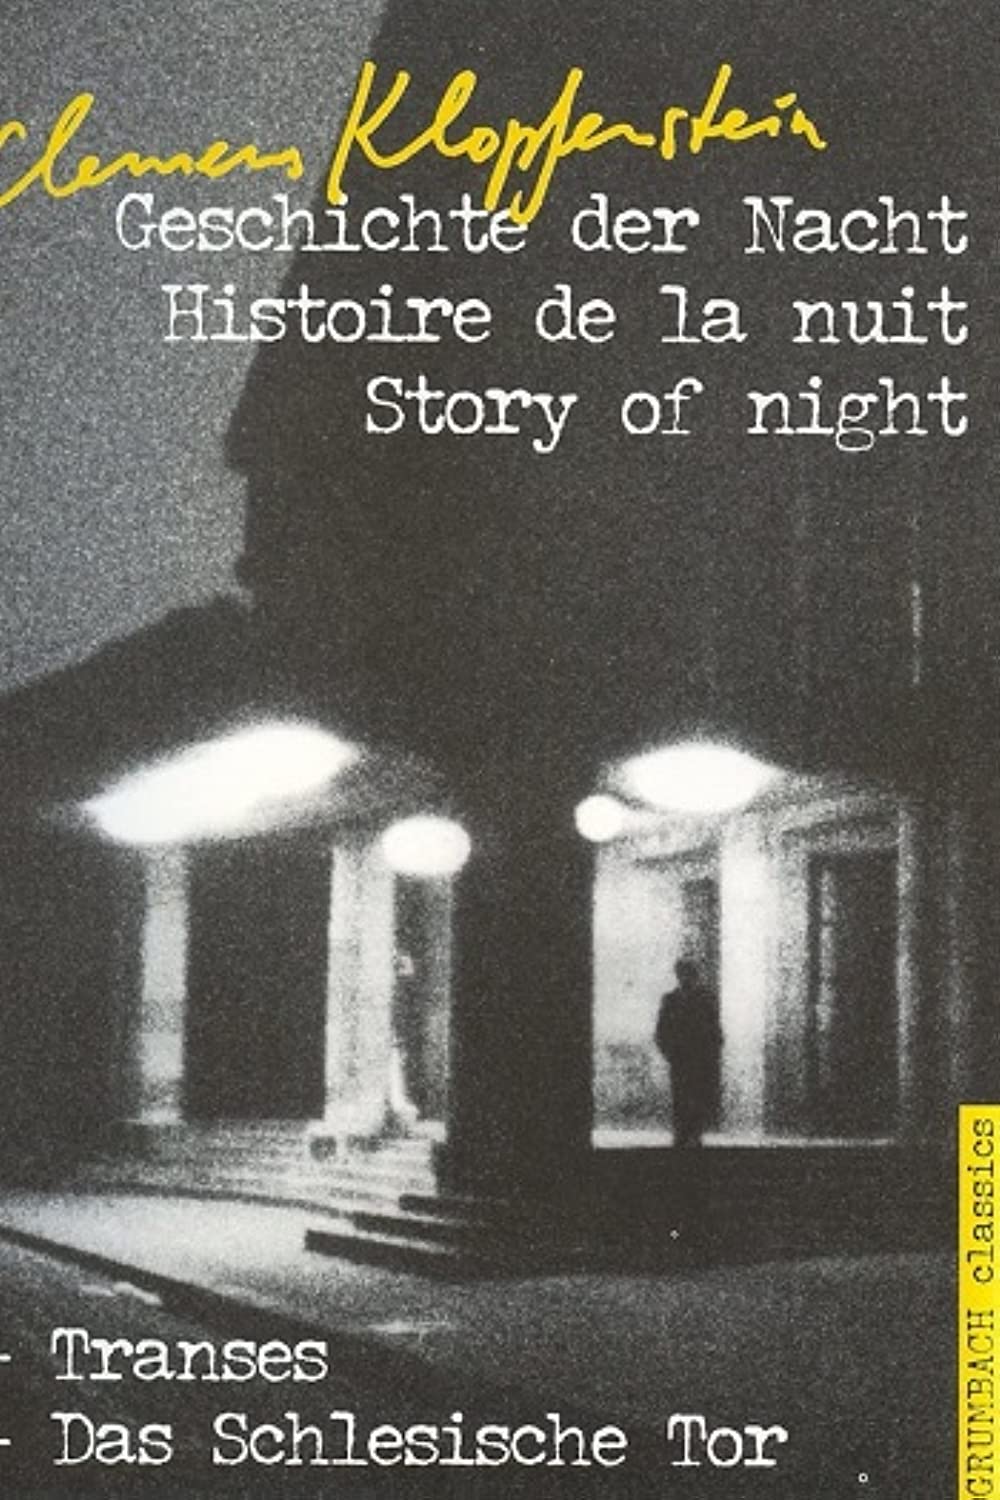 Filmbeschreibung zu Geschichte der Nacht